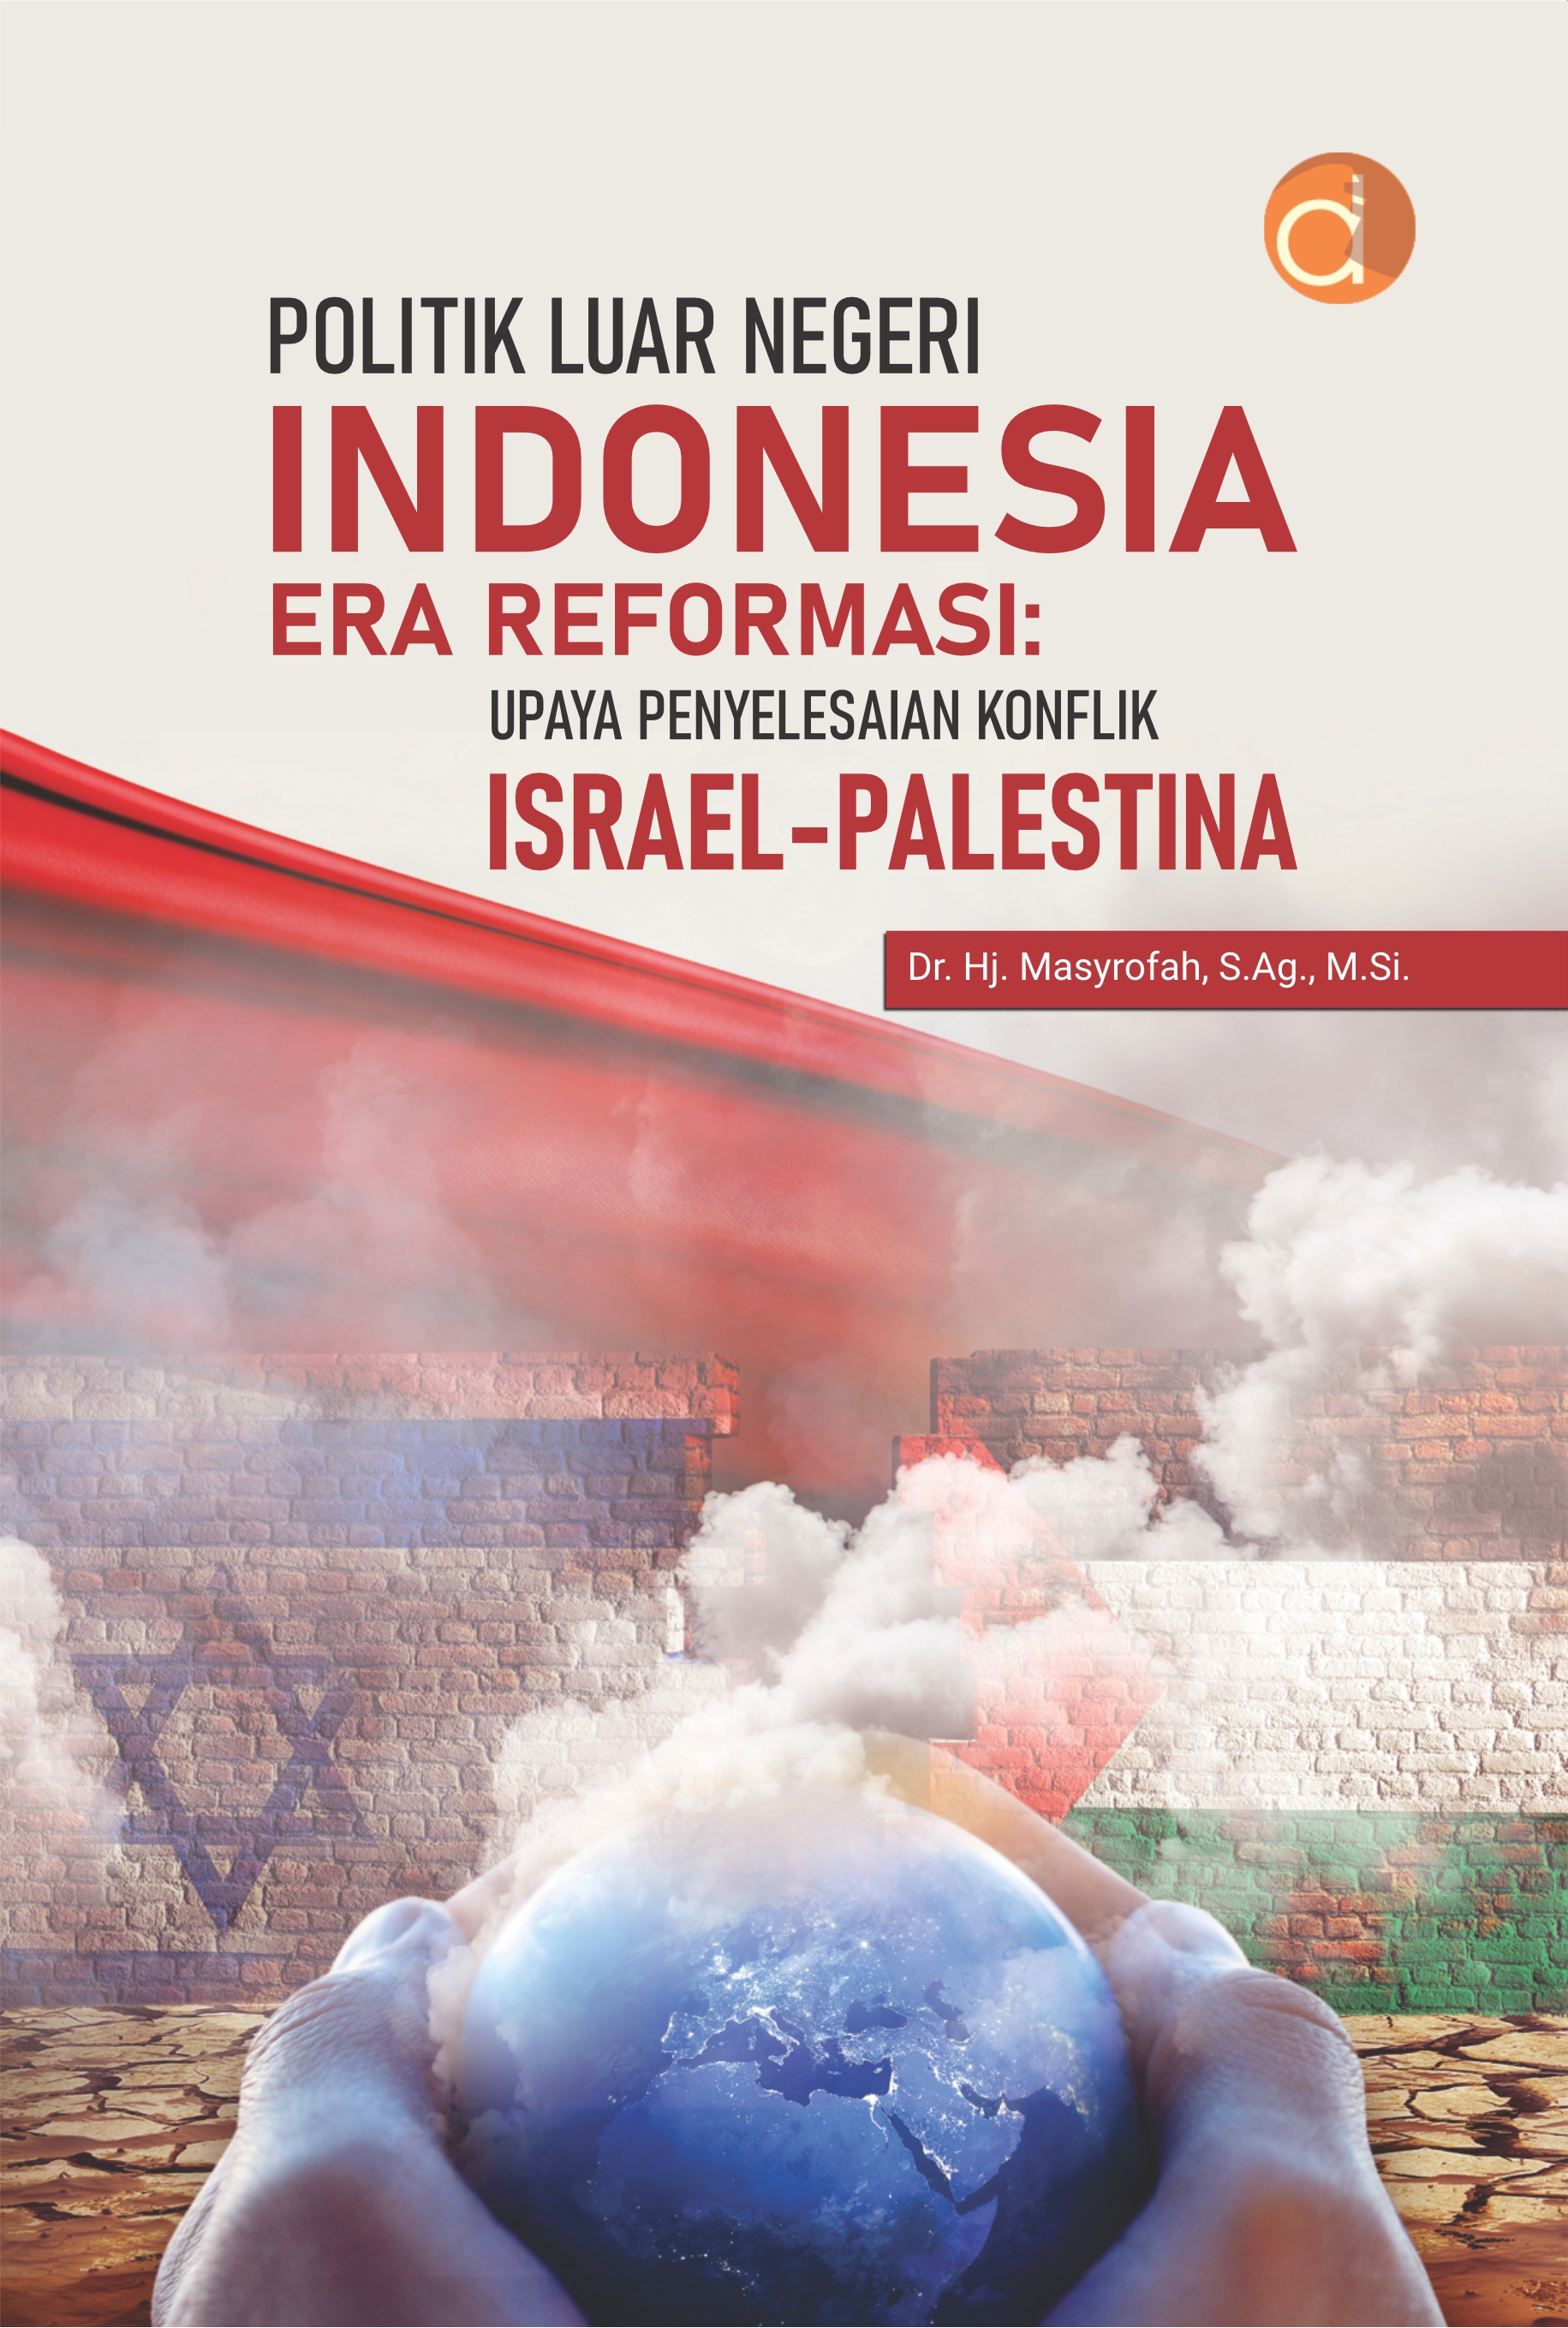 Politik luar negeri Indonesia era reformasi [sumber elektronis] : upaya penyelesaian konflik Israel-Palestina